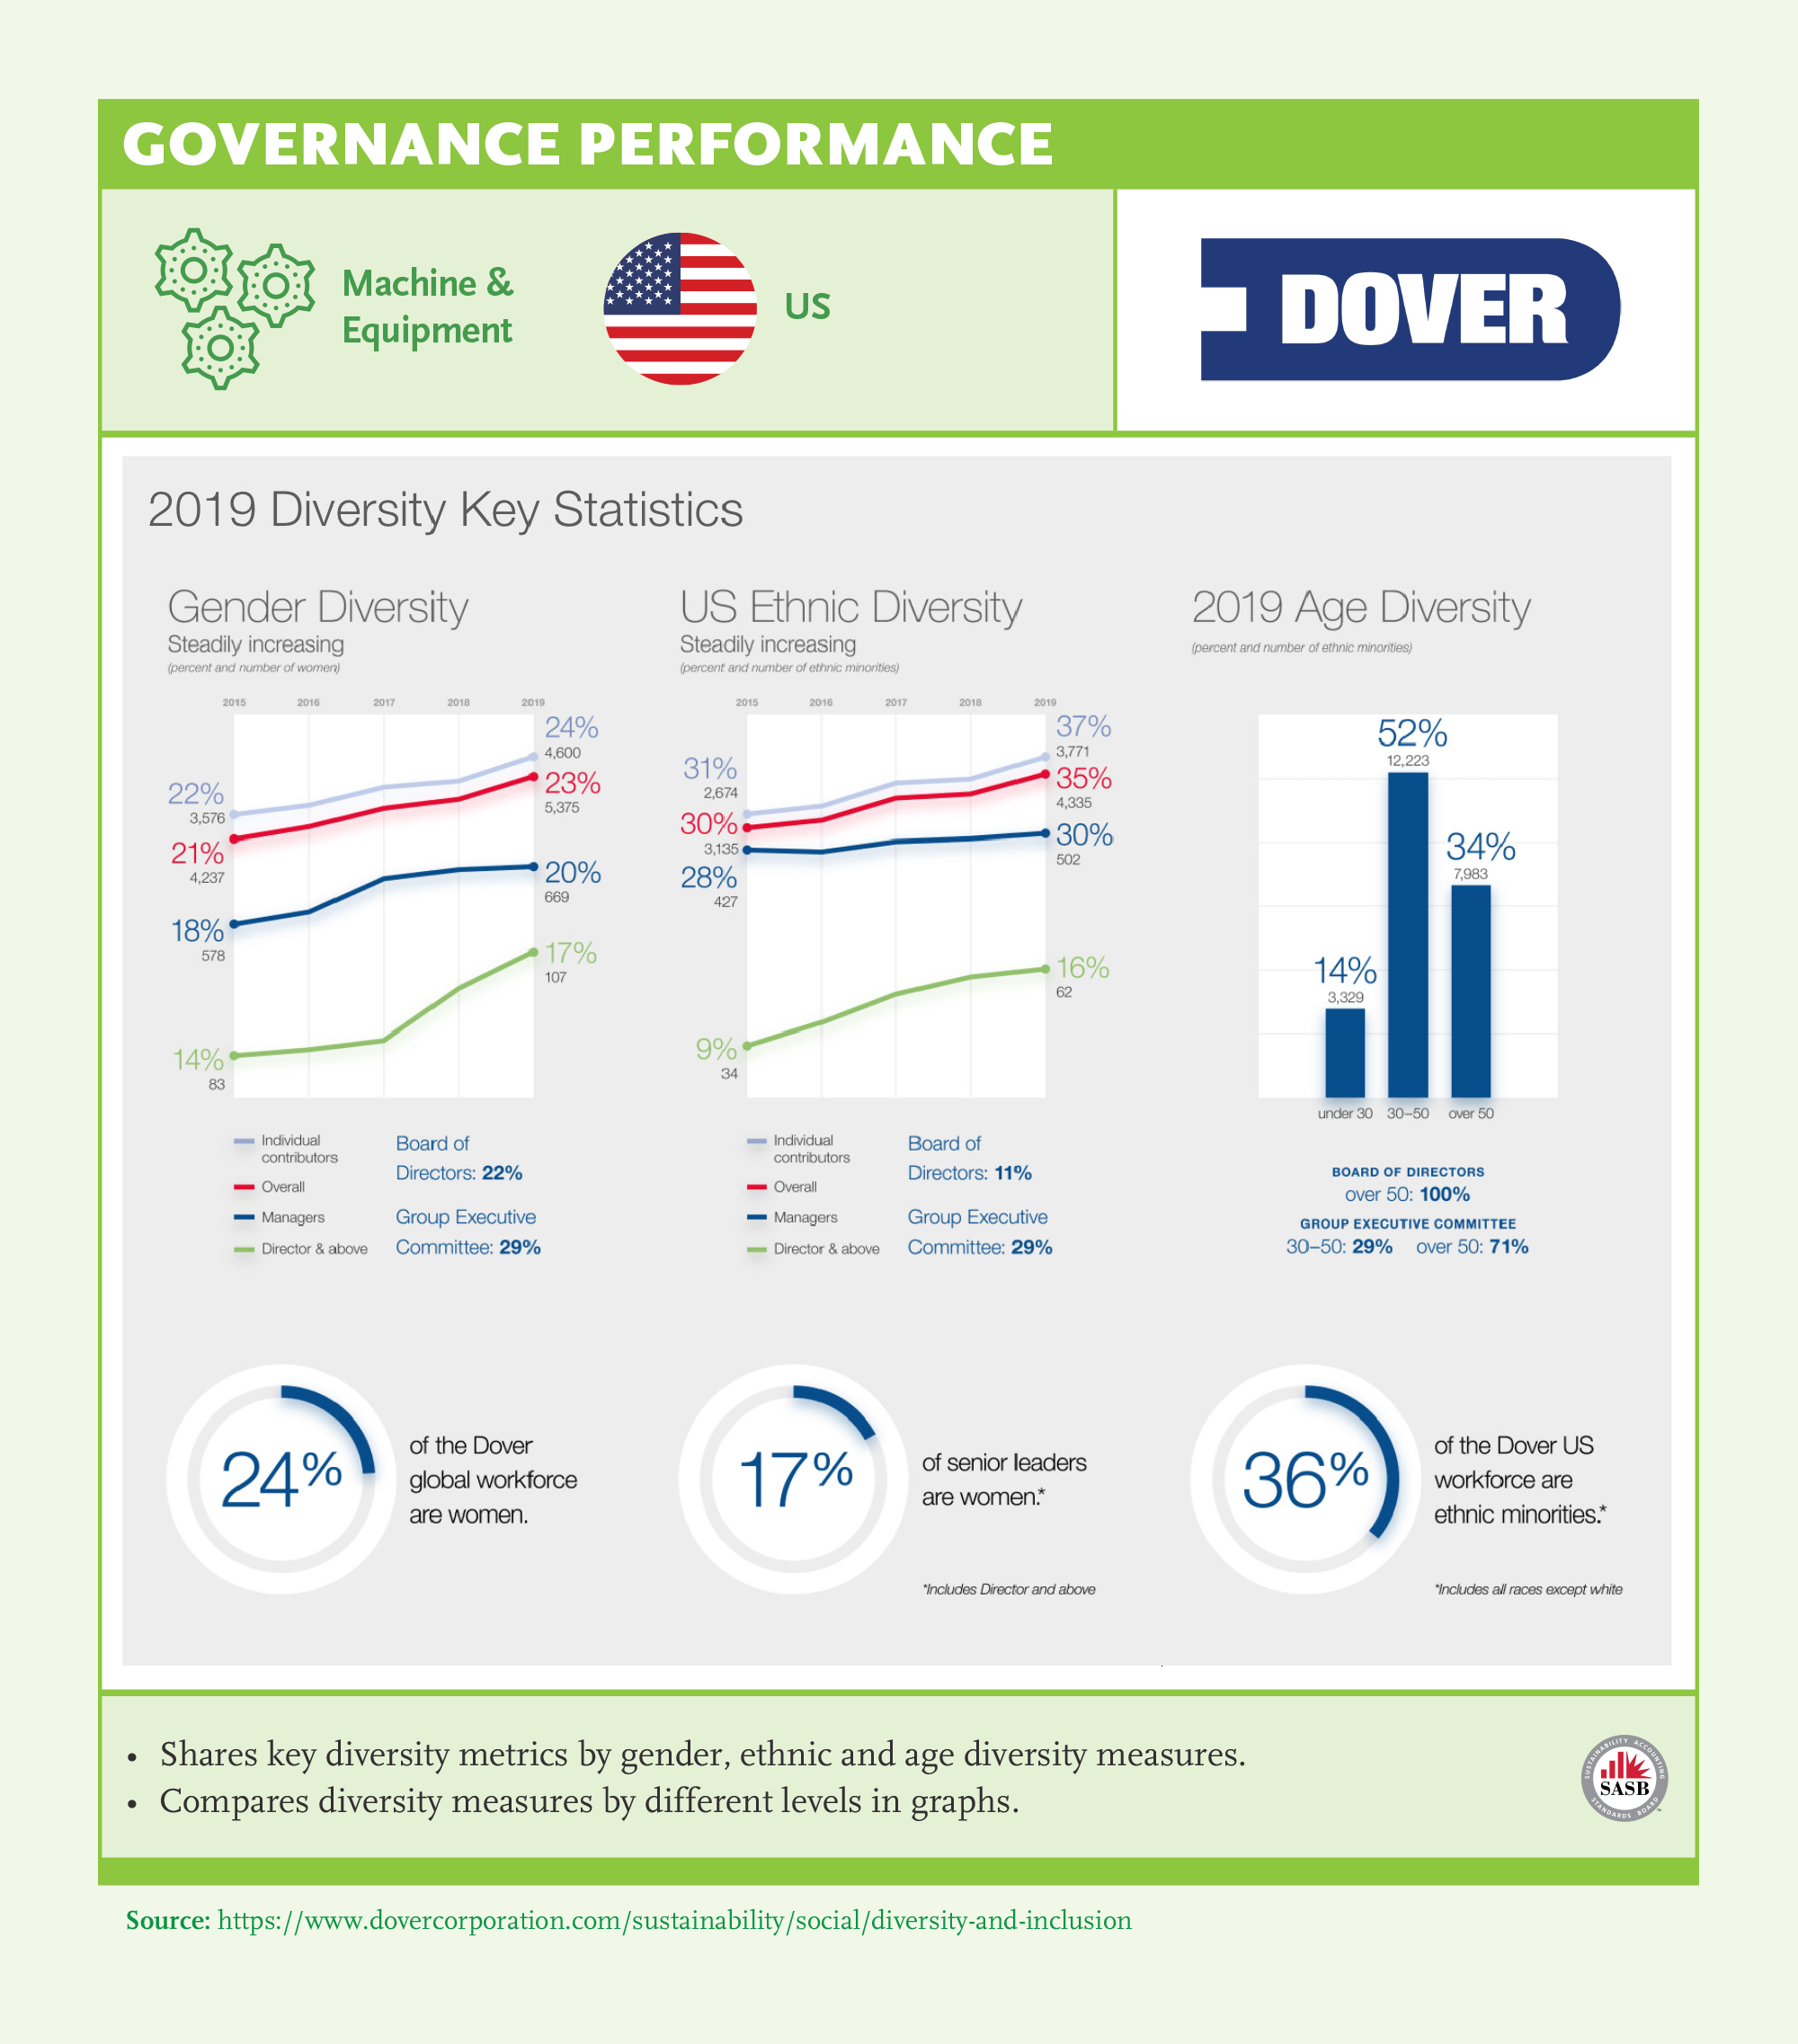 Governance Performance: Dover